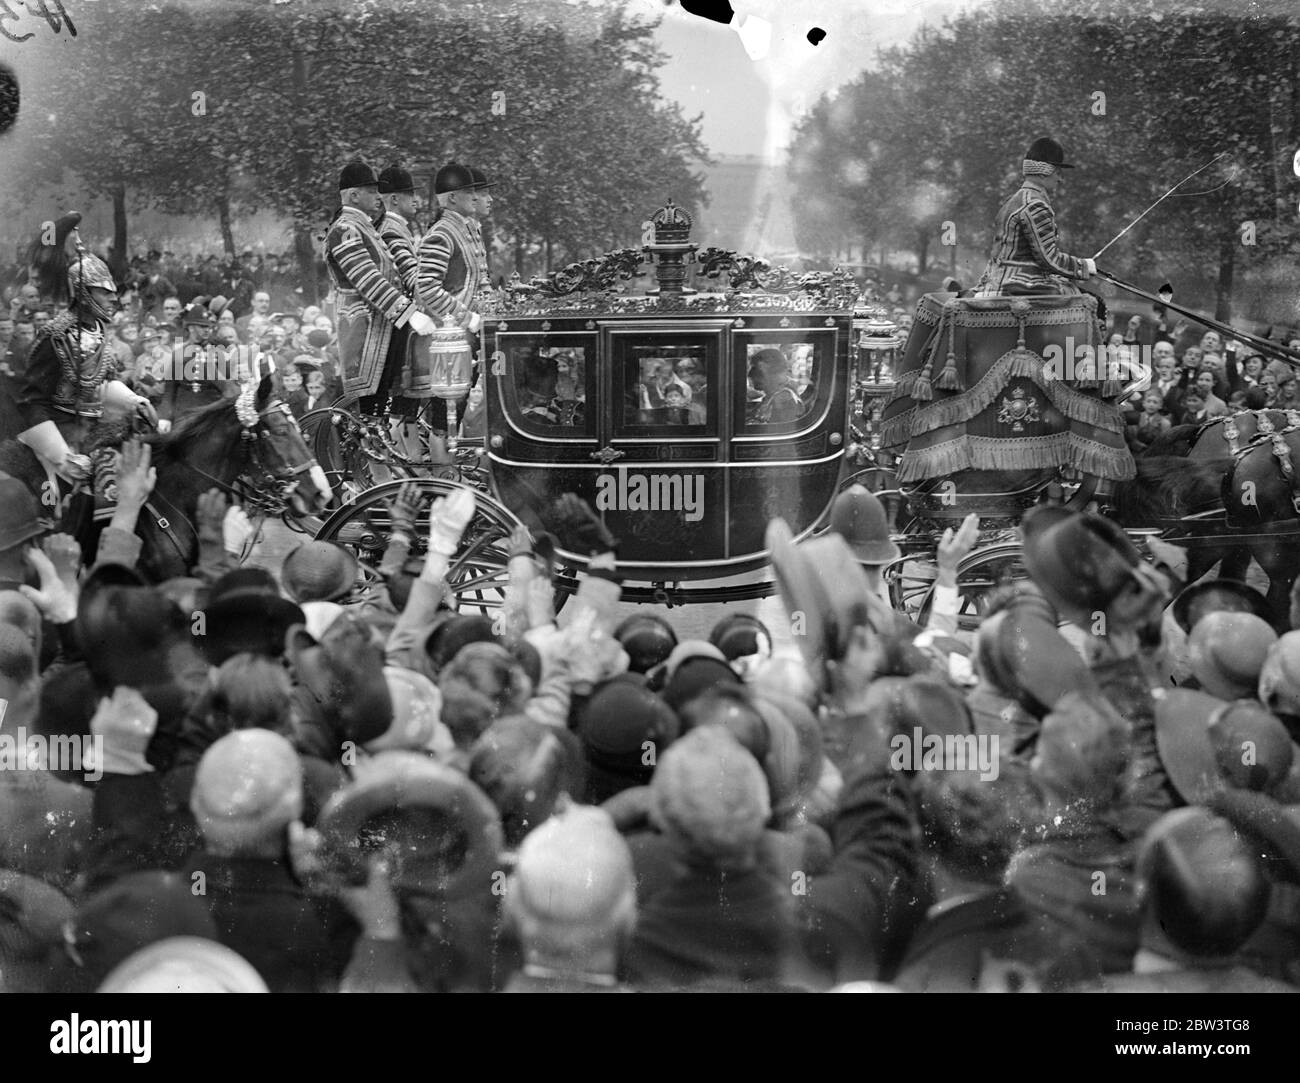 King's erster Staatsfahrt durch London. Der König machte seine erste Staatsfahrt durch London, als er in einem goldenen Staatswagen ritt, gezogen von vier Pferden, vom Buckingham Palace bis zum St. Jame' s Palace, um den zweiten Deich seiner Herrschaft zu halten. Foto zeigt, der König im Staatsbus, wie er aus Buckingham Palace fuhr. 26 Mai 1936 Stockfoto